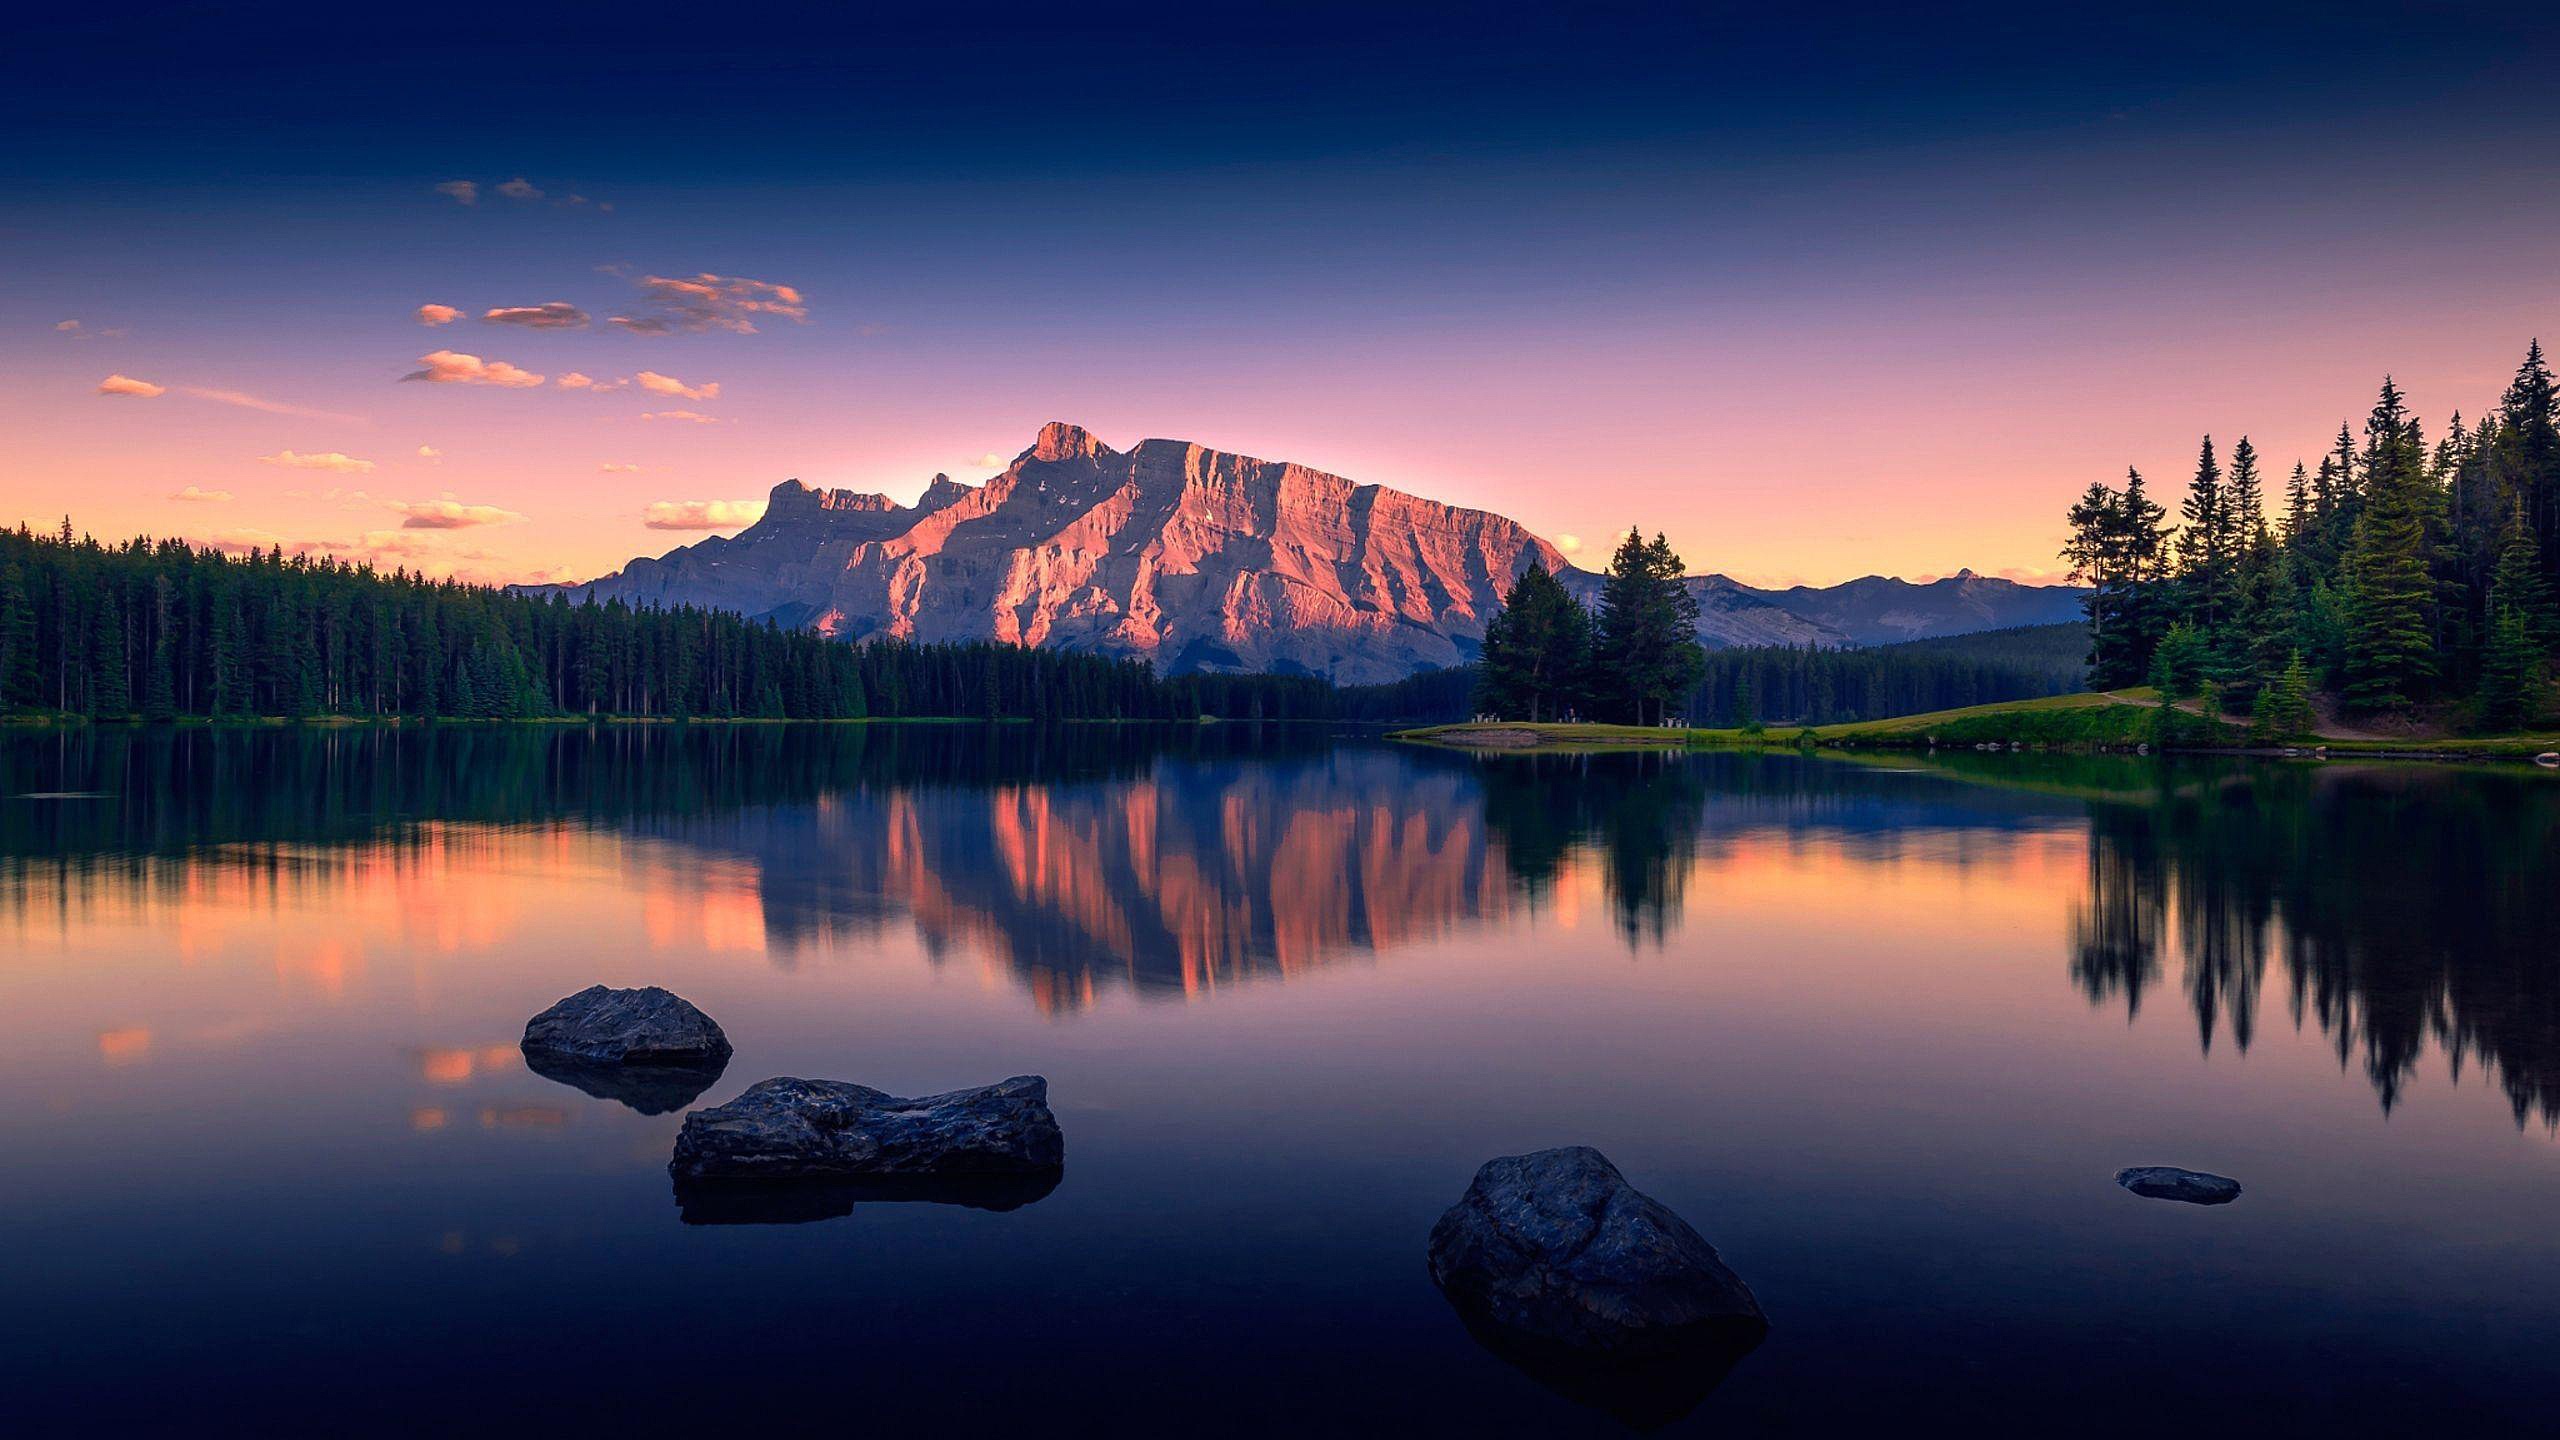 Скачать обои Горы, Озеро, Камни, раздел природа в разрешении 2560x1440.